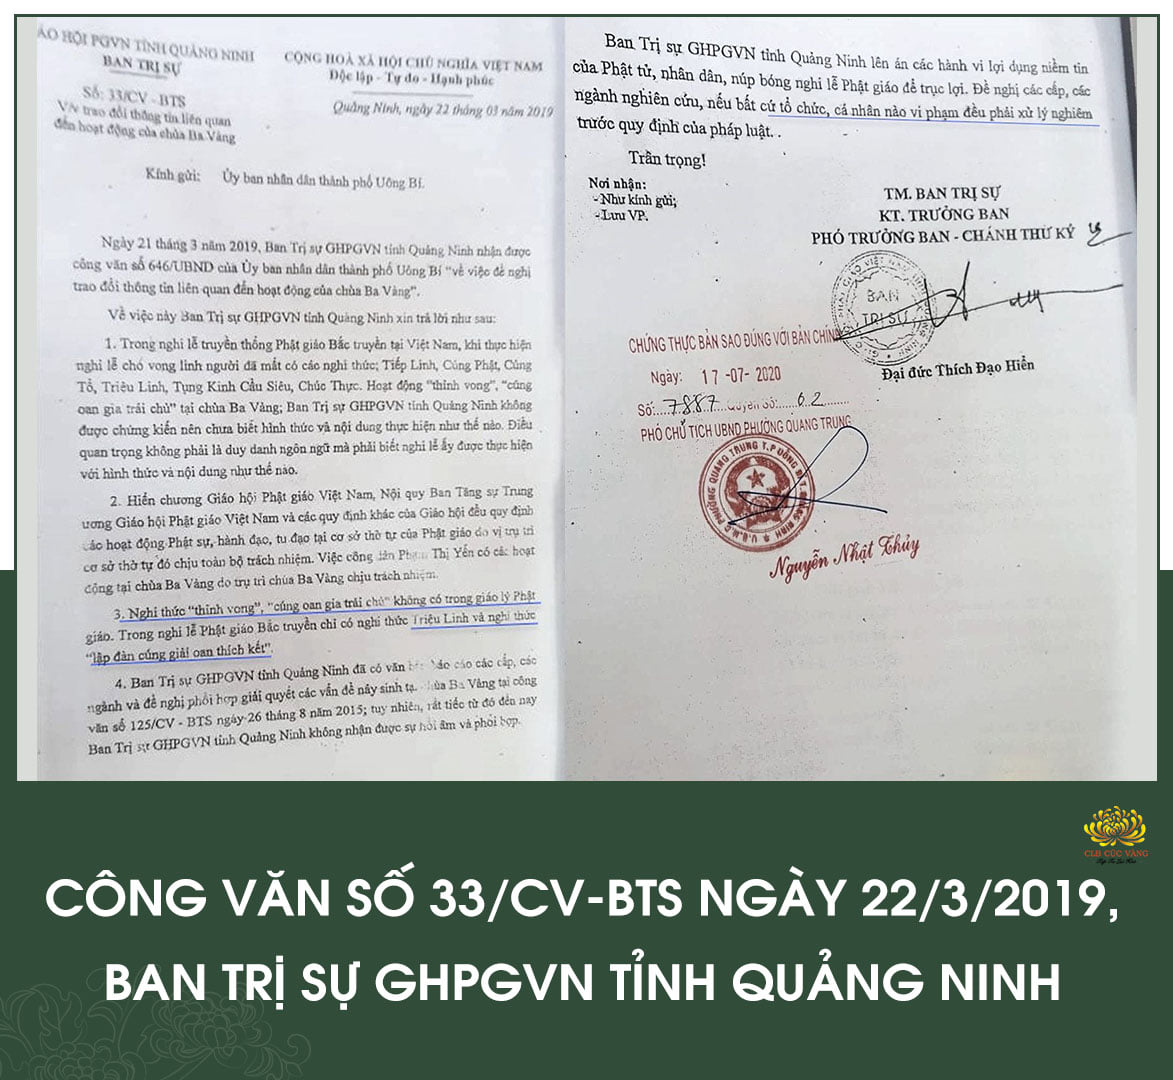 p6-cong-van-33-ngay-22-3-2019